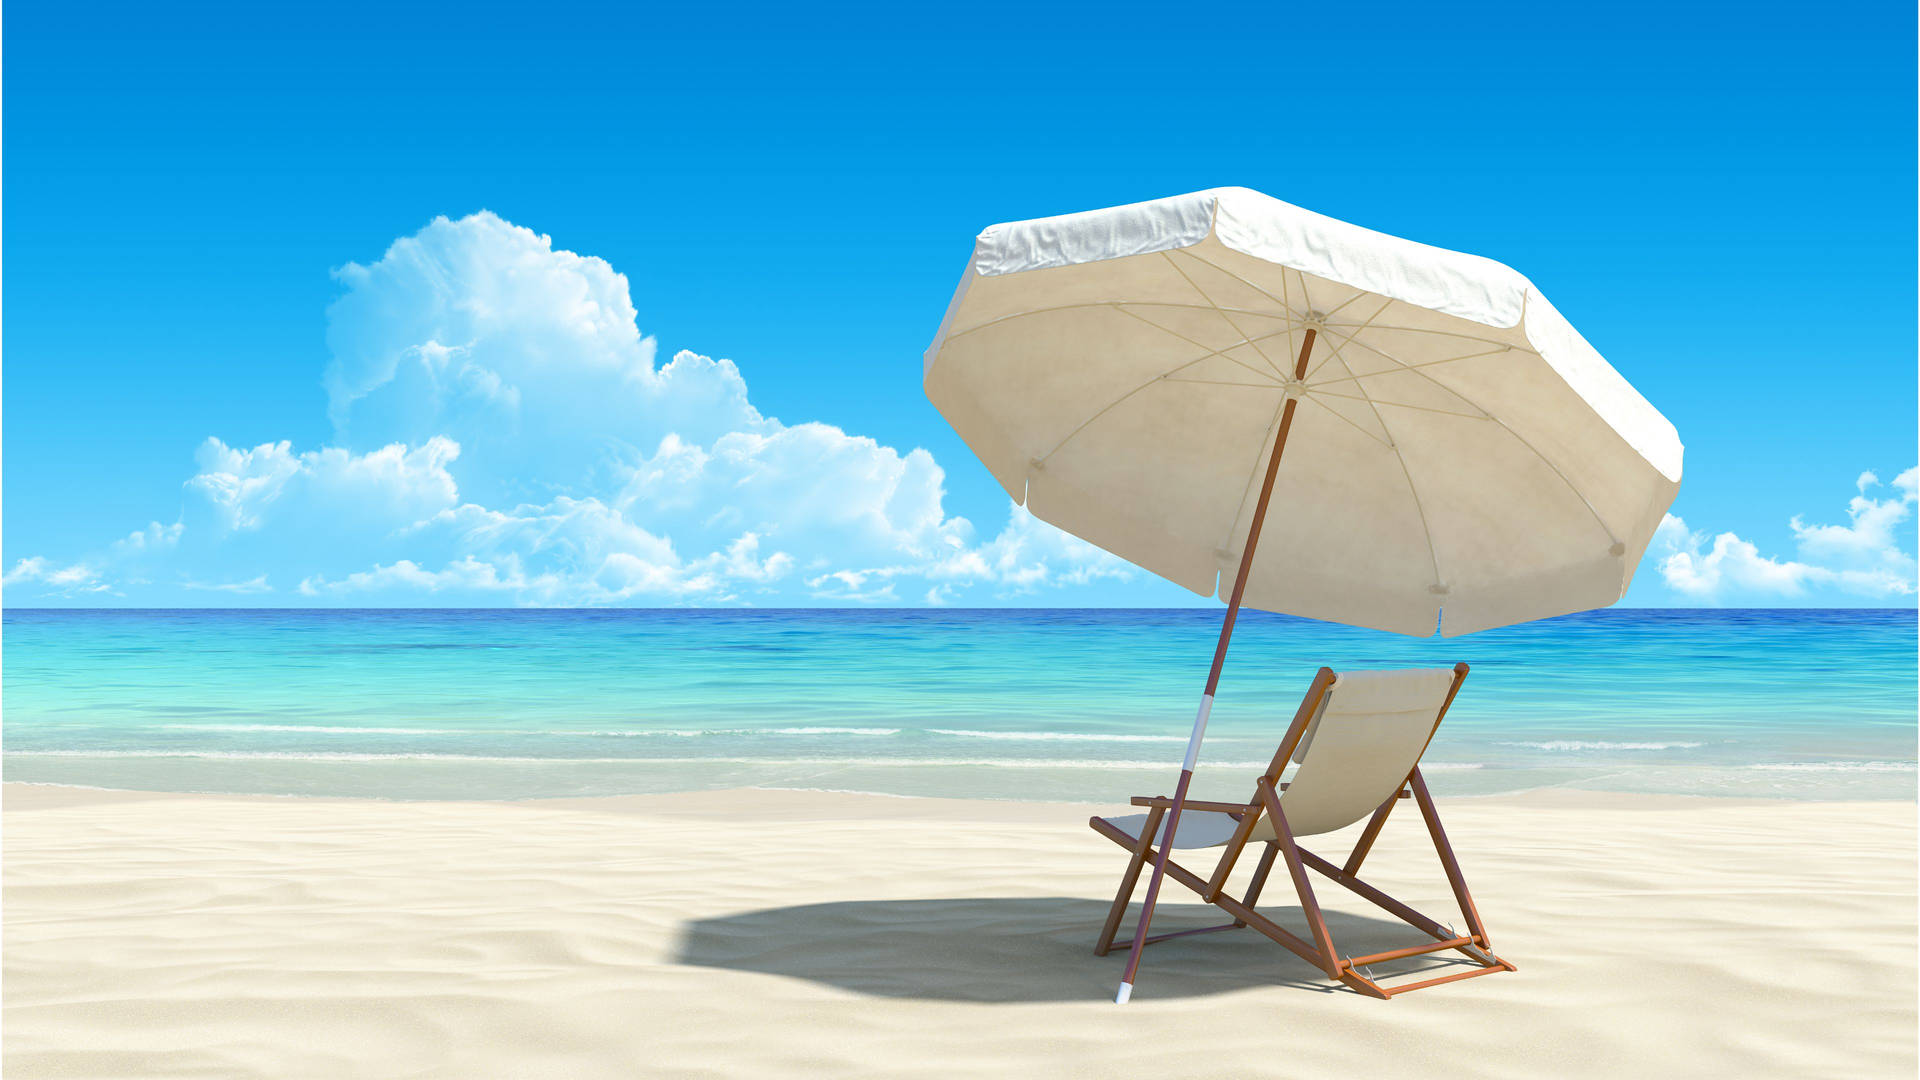 Sfondiper Desktop Con Scene Di Spiaggia, Gli Elementi Indispensabili Per Le Vacanze. Sfondo